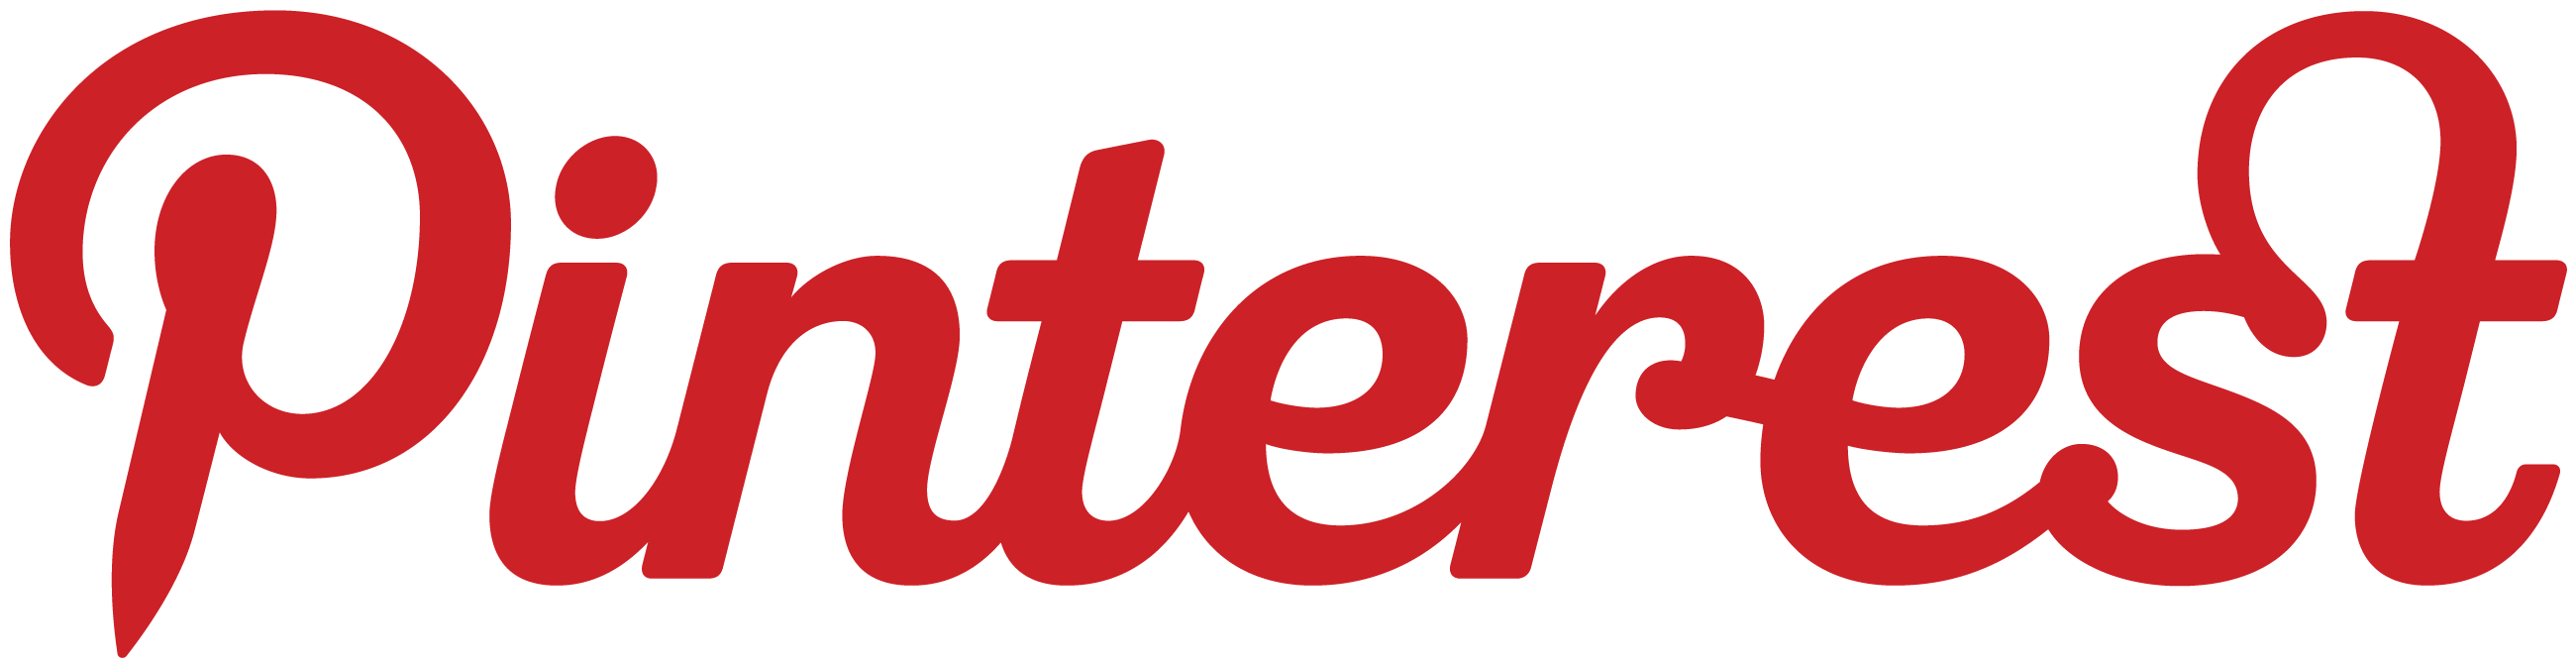 Pinterest Home Logo - pinterest logo